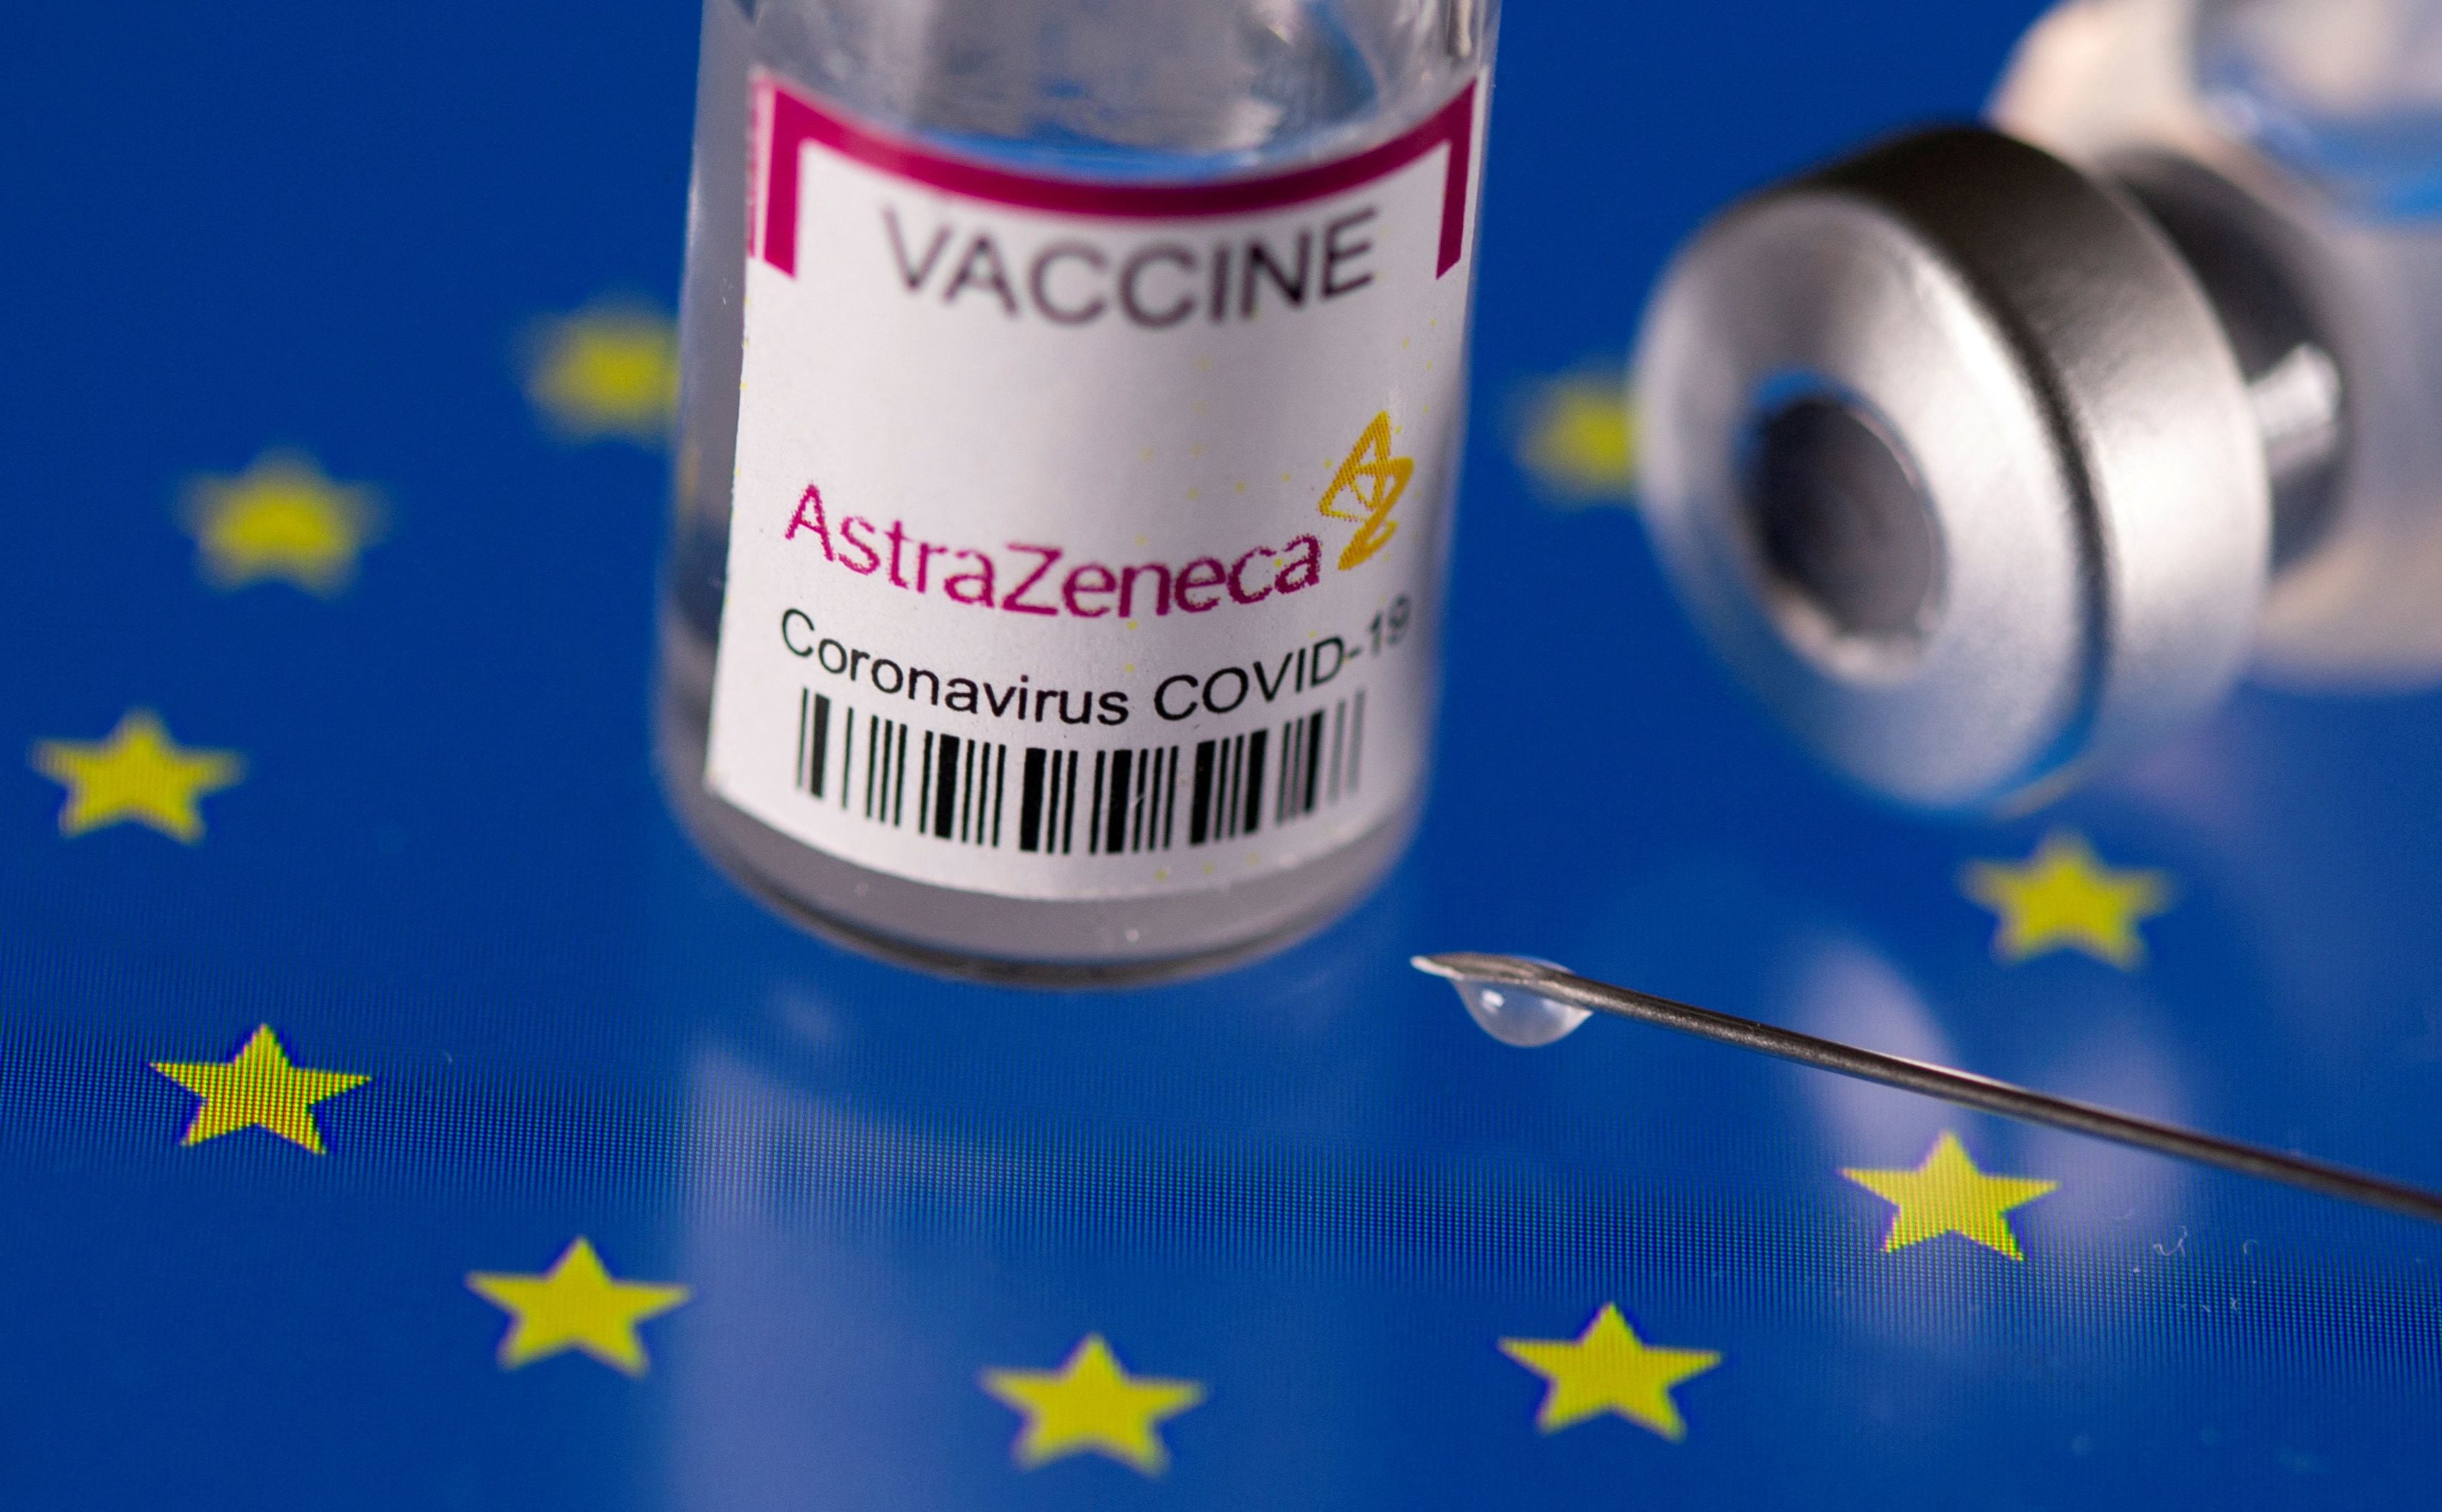 Según los diarios británicos AstraZeneca dijo en los tribunales británicos que "la vacuna AZ puede, en casos muy raros, causar trombocitopenia (TTS). Pero la razón de discontinuar la vacuna pedida por el mismo AZ no tiene que ver con este juicio. ( REUTERS/Dado Ruvic/Illustration)